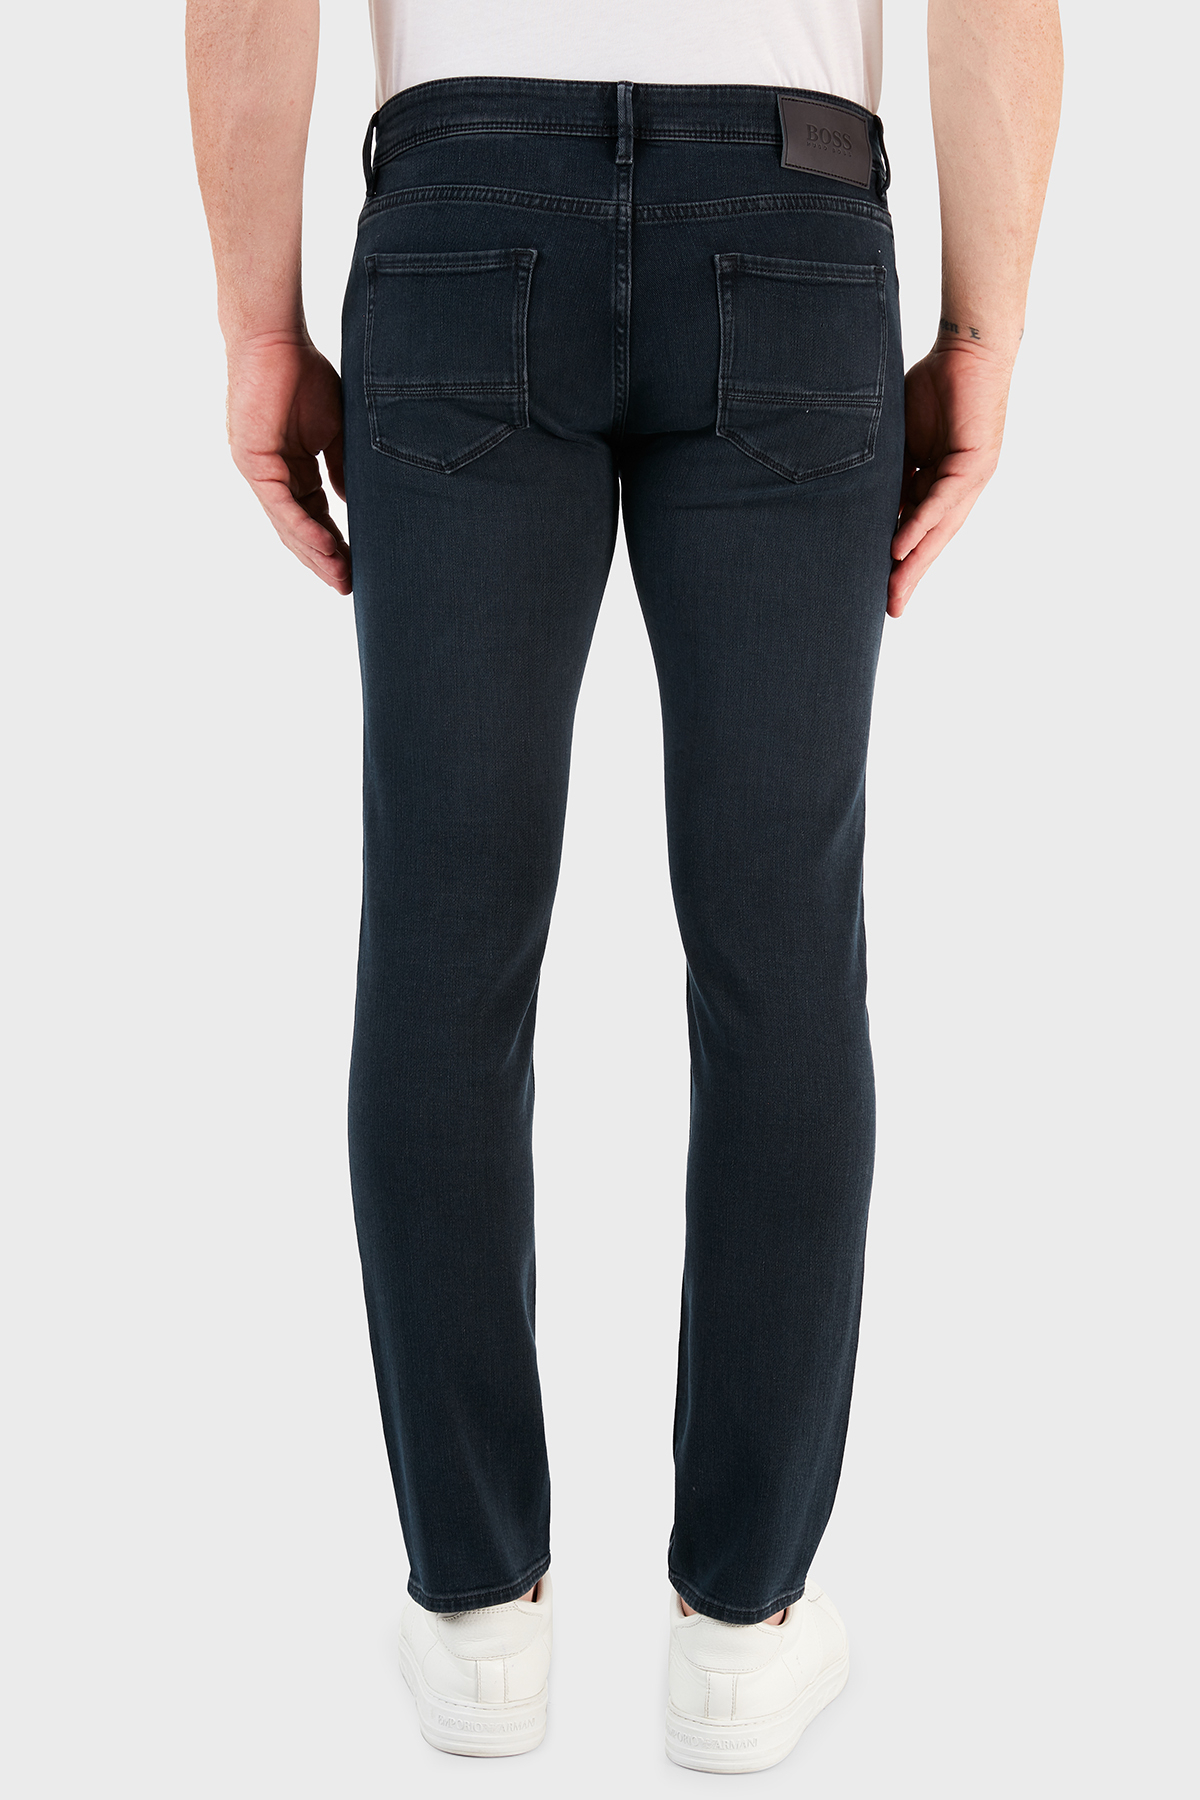 Hugo Boss Pamuklu Extra Slim Fit Jeans Erkek Kot Pantolon 50458140 426 LACİVERT